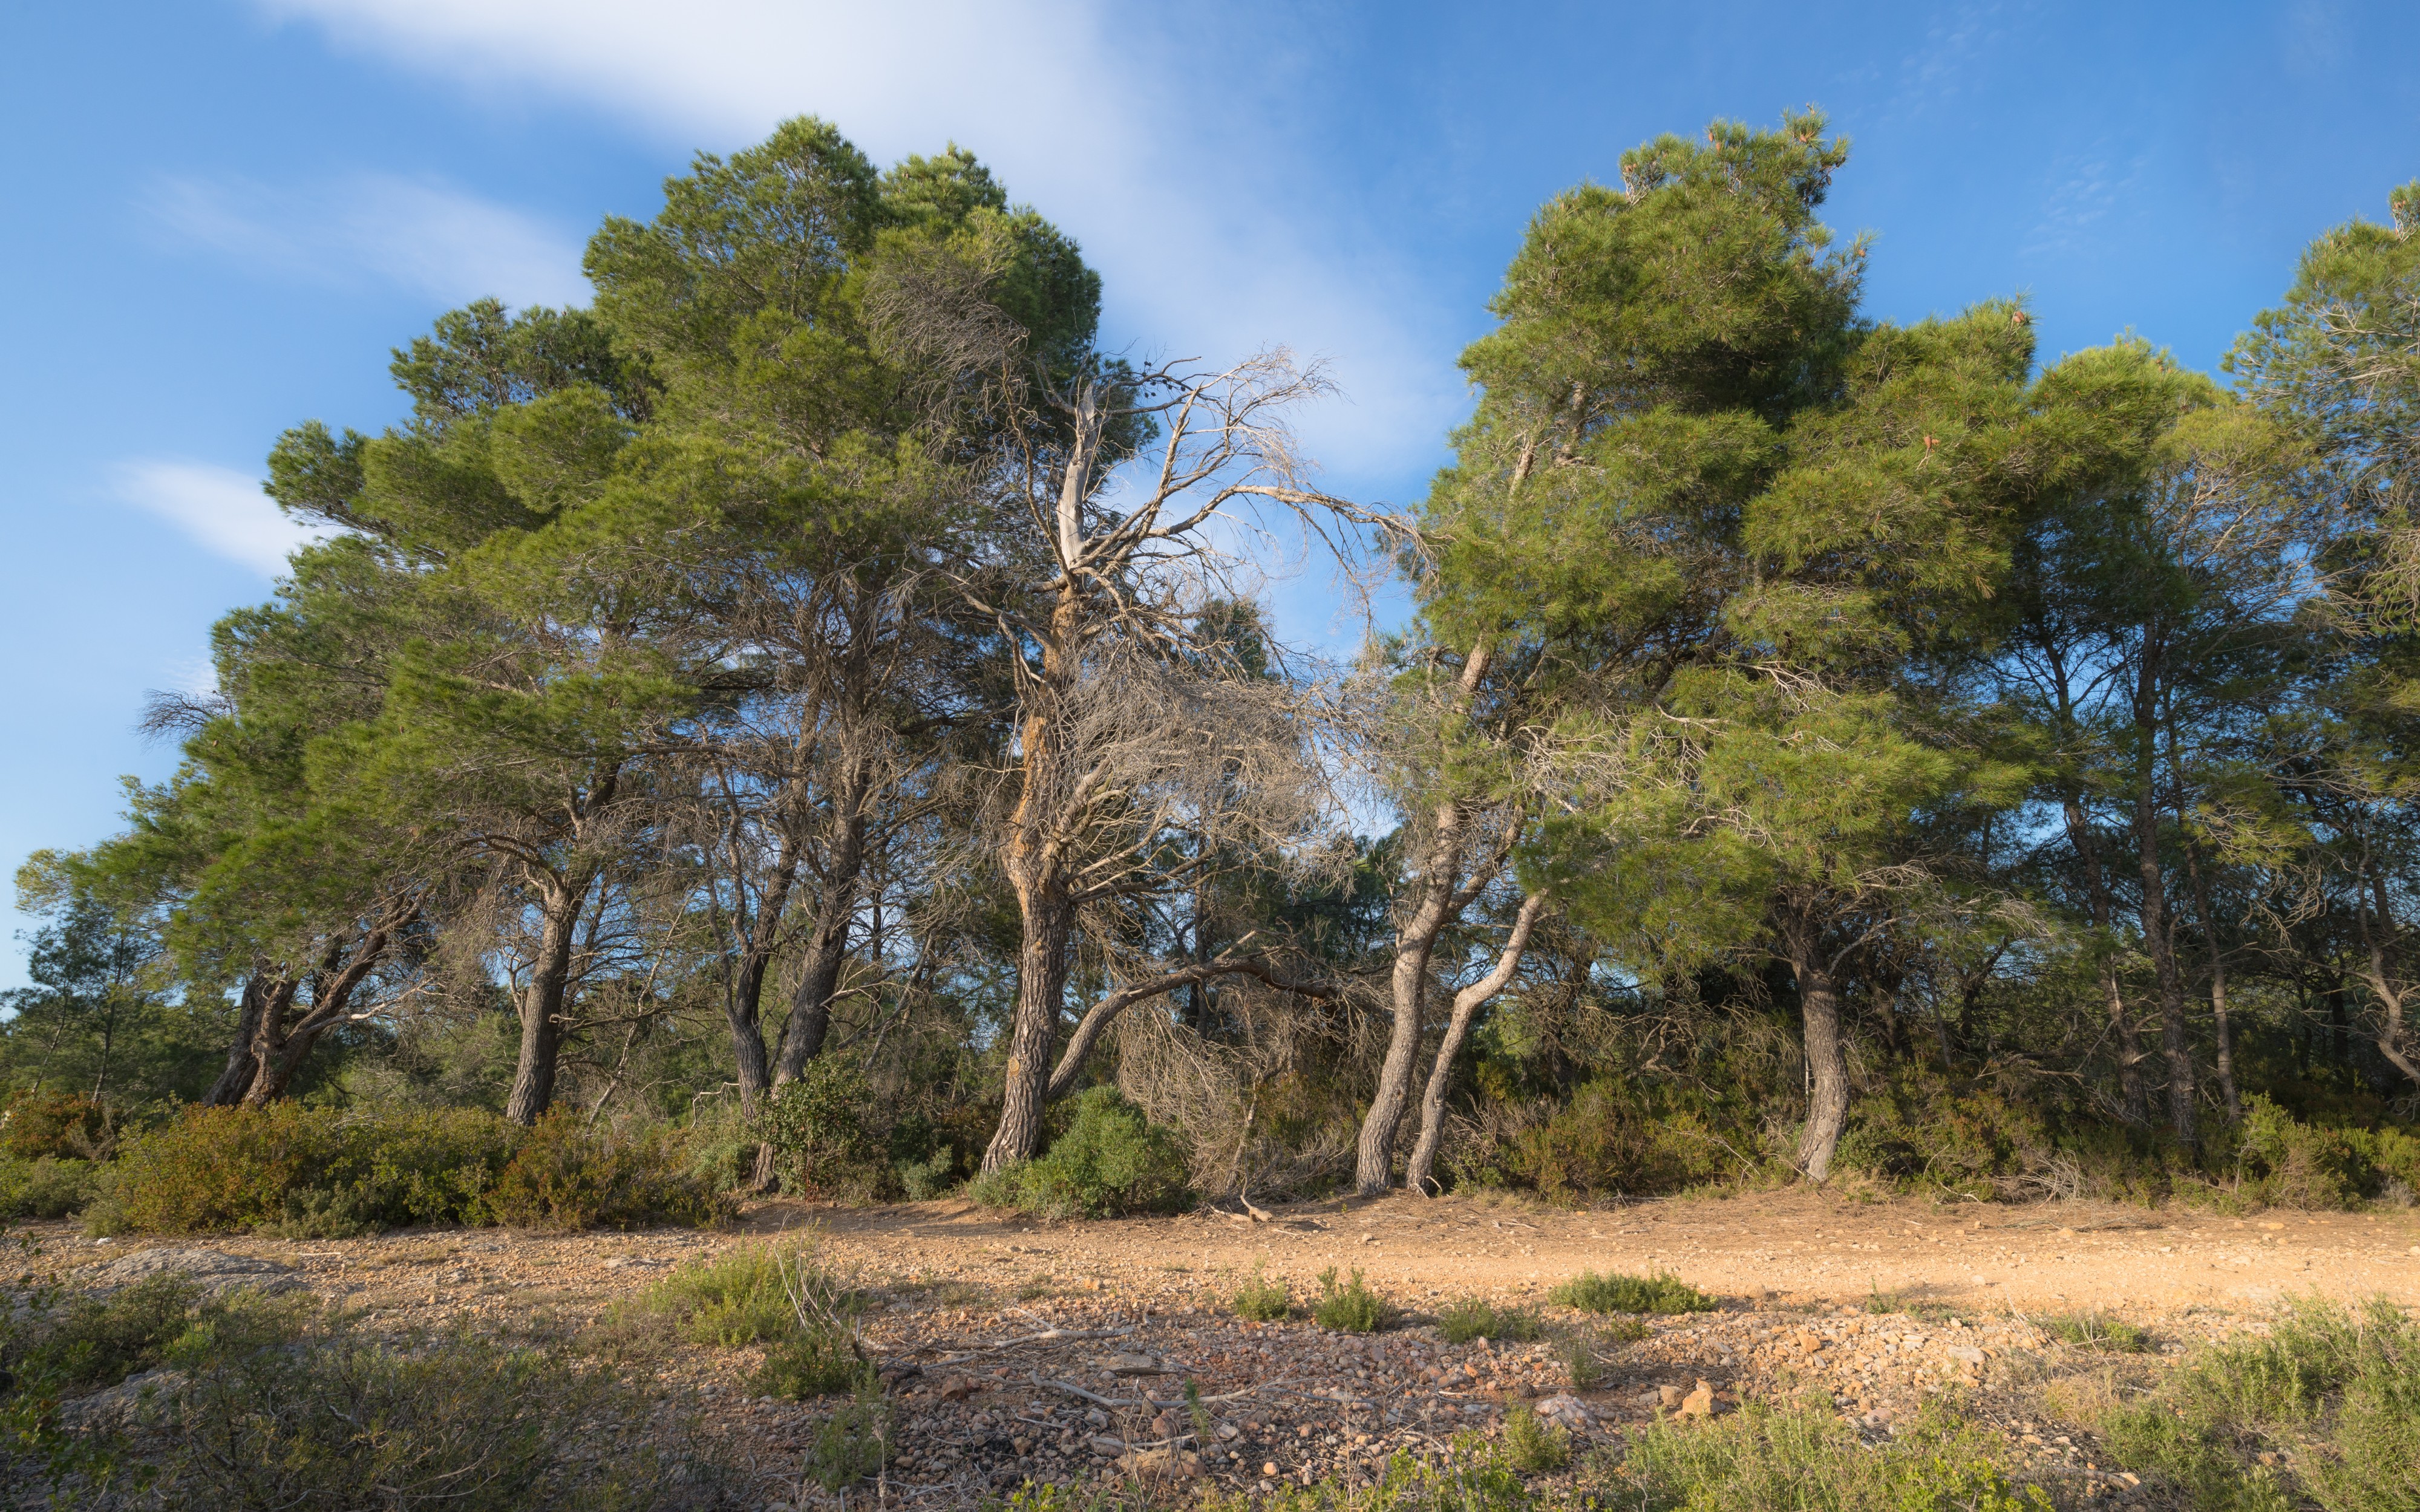 Aleppo Pines grove, Pinet, Hérault